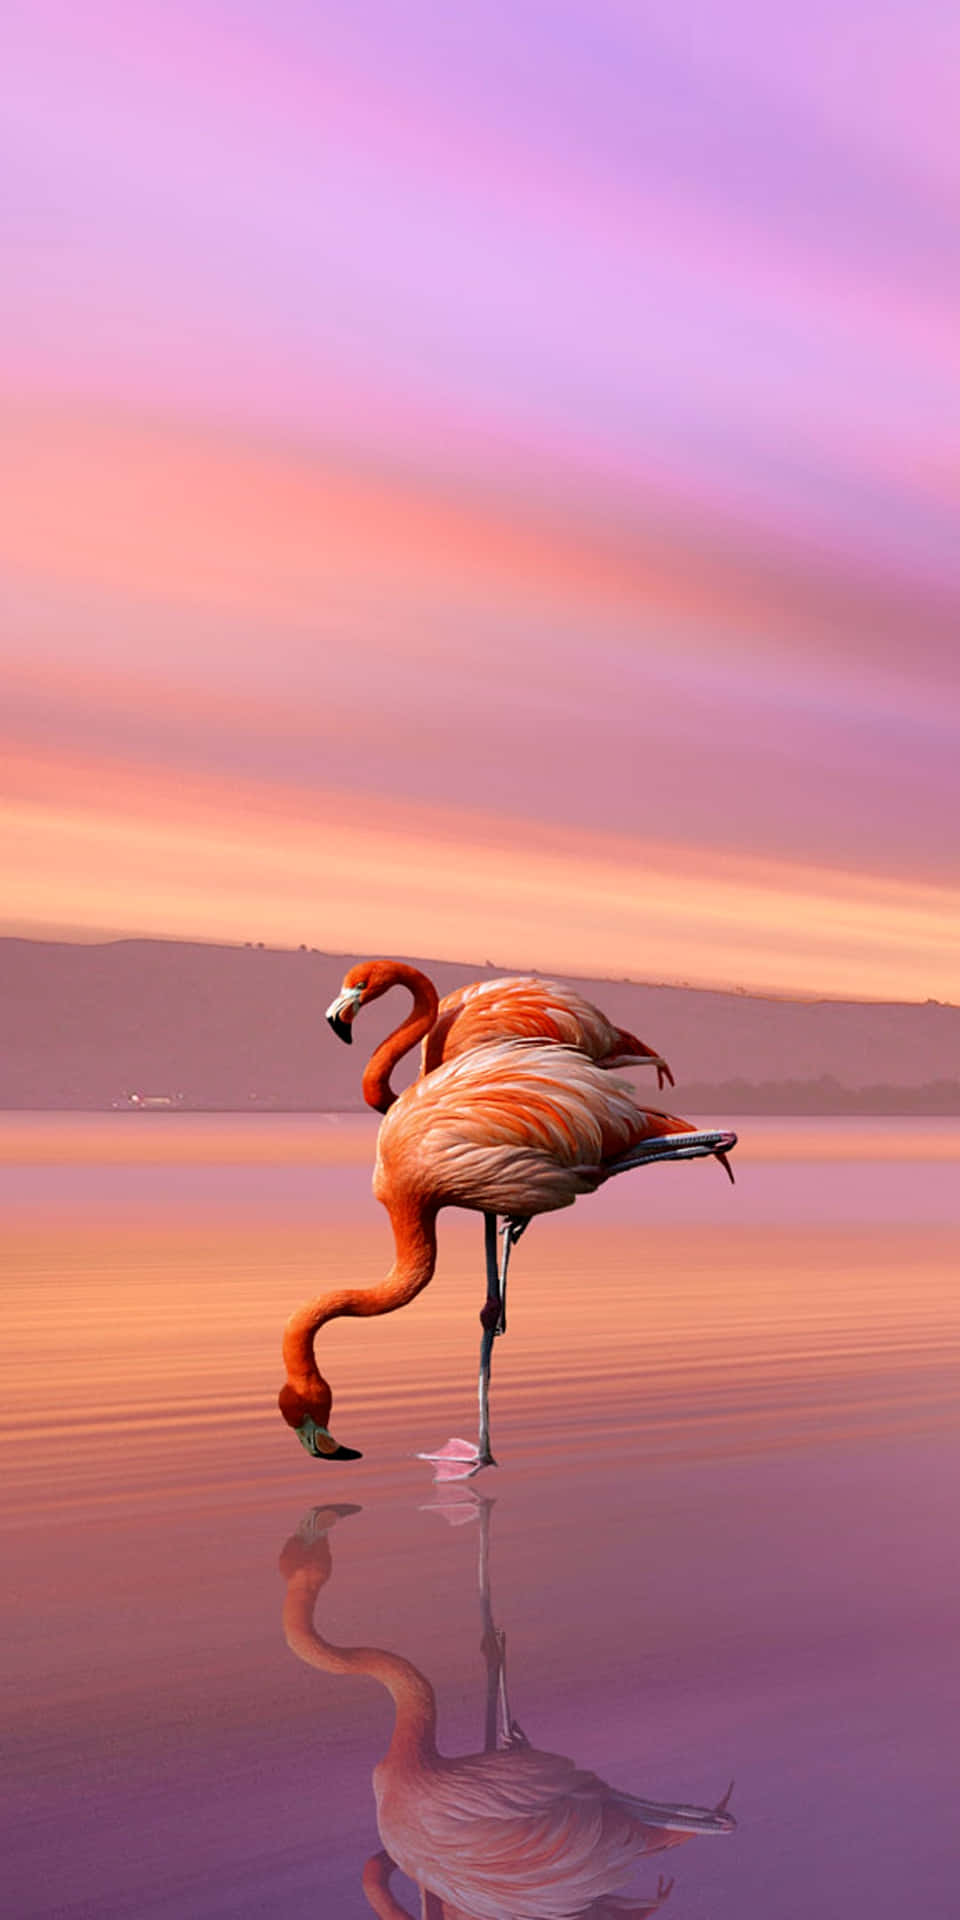 Einungewöhnlich Rosa Gefärbter, Einsamer Flamingo Steht Zwischen Den Sumpfigen Gewässern - Ein Fesselnder Anblick. Wallpaper